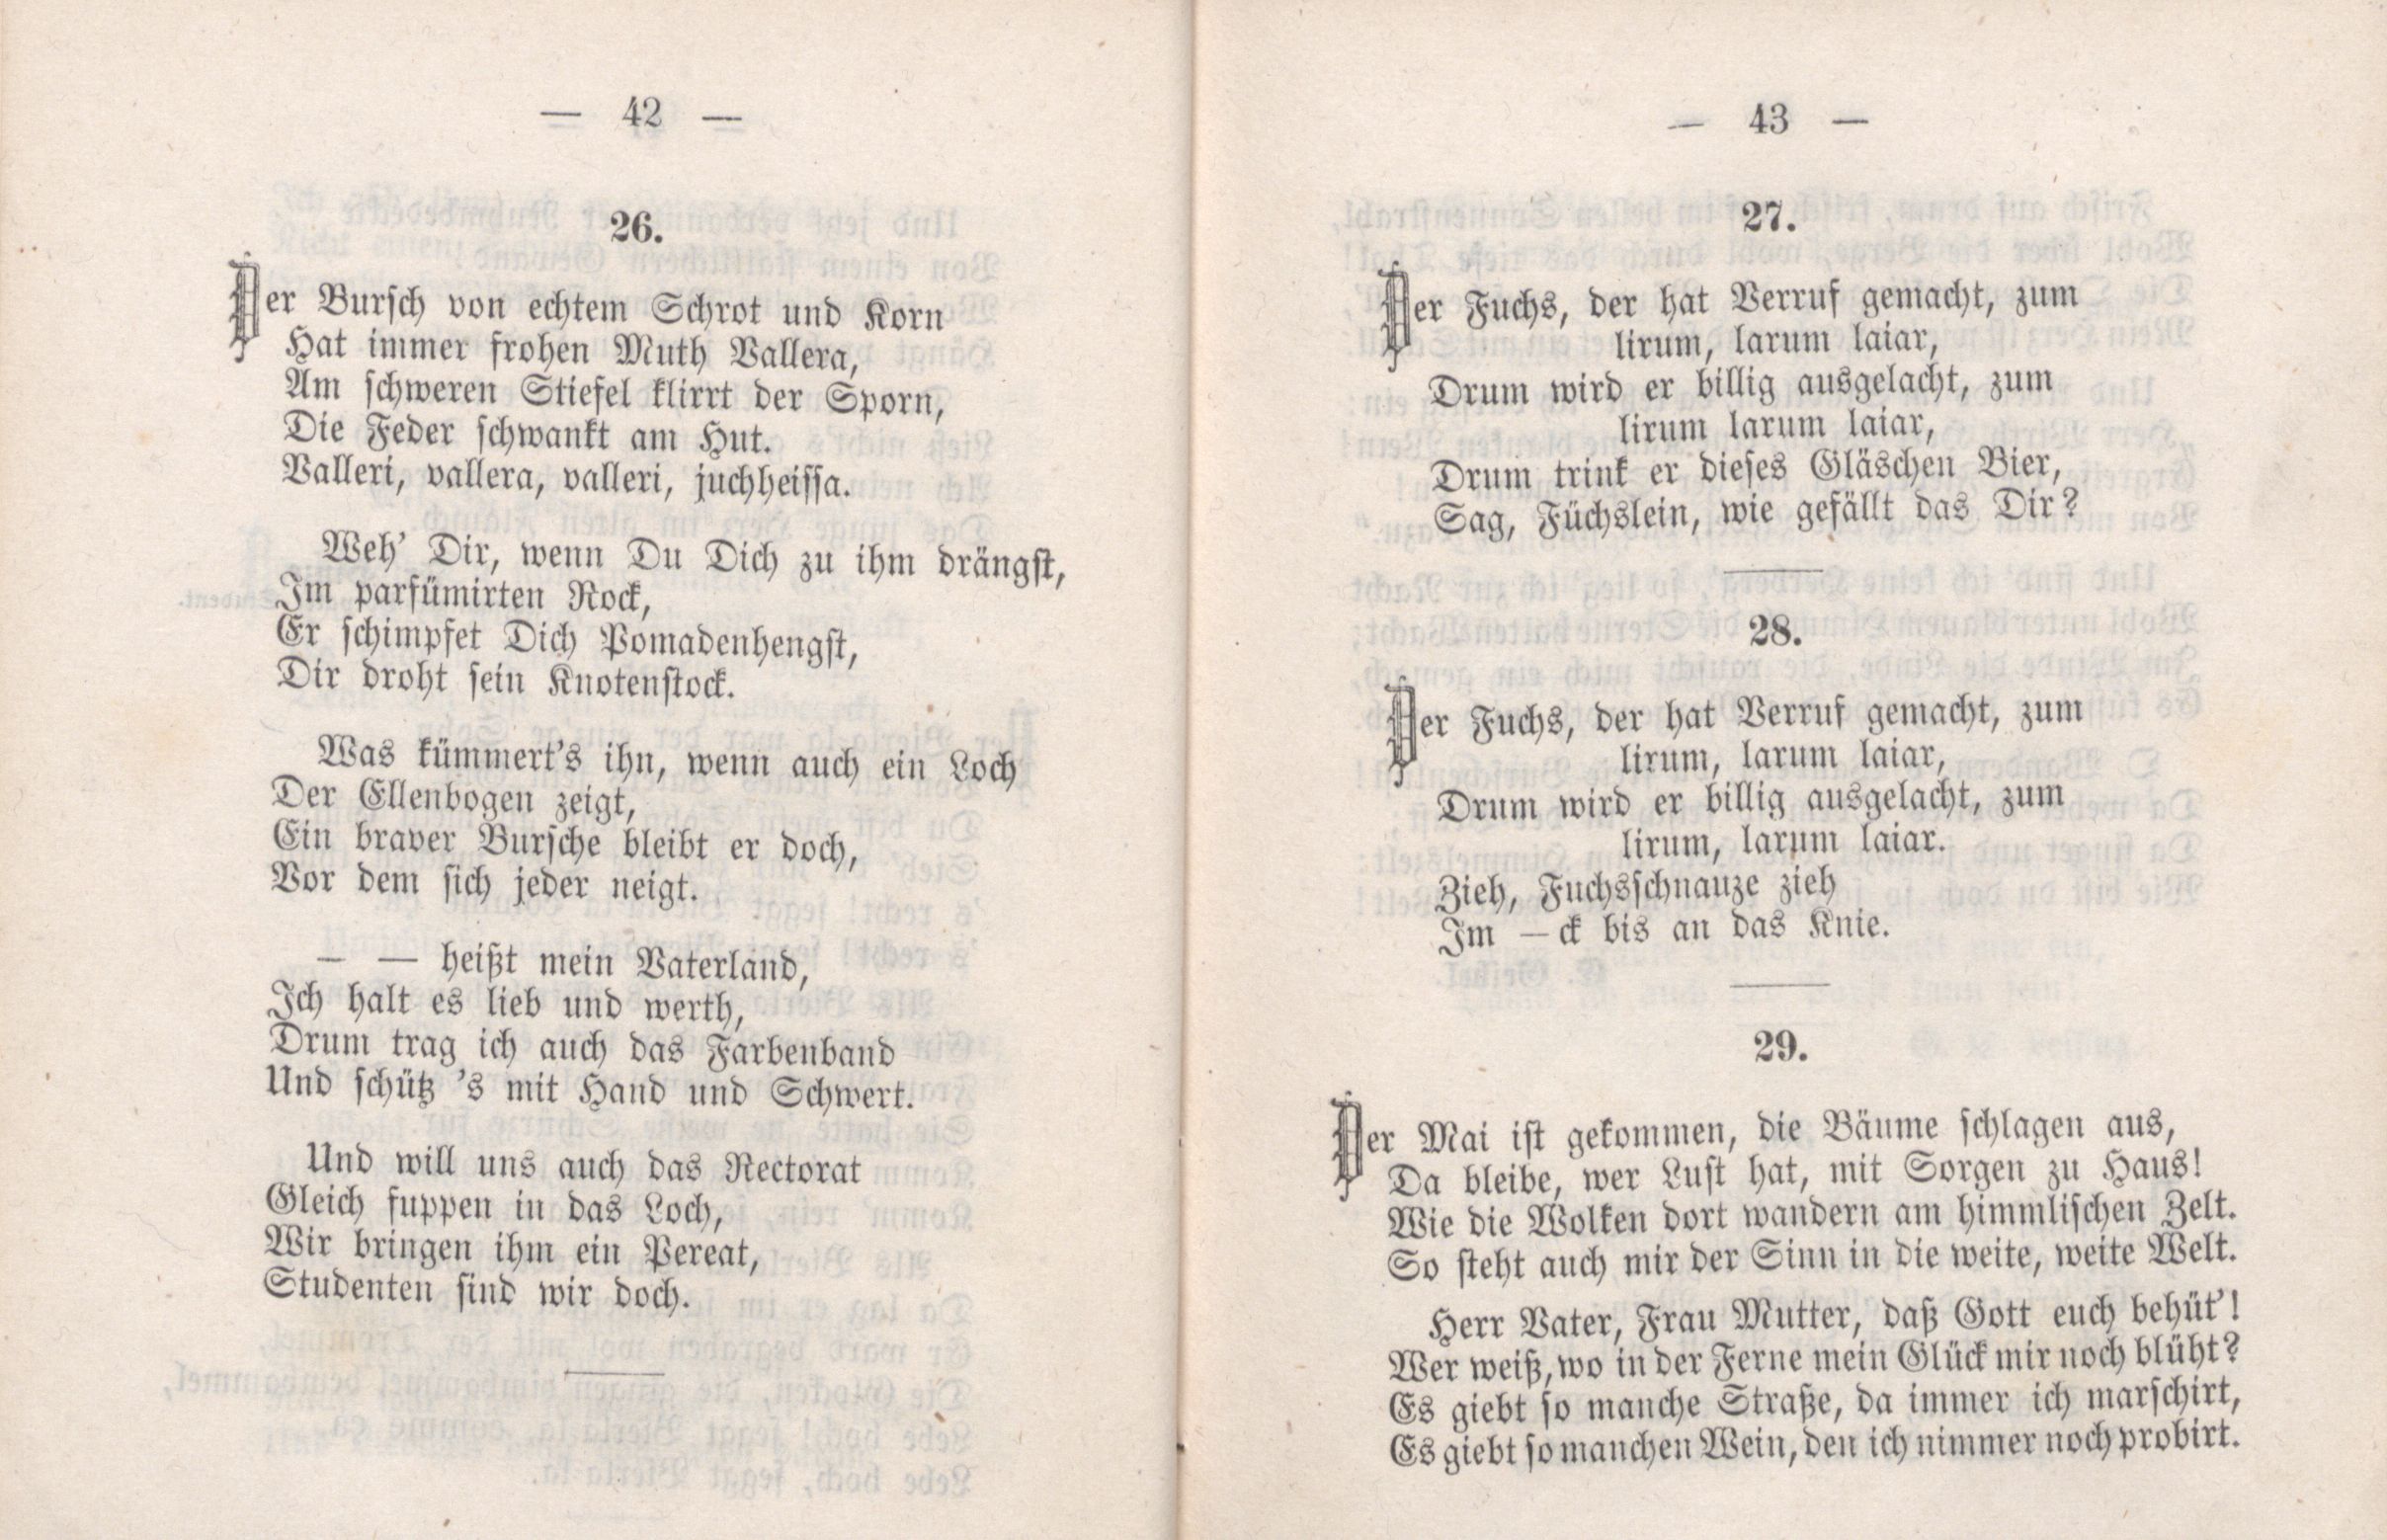 Dorpater Burschenliederbuch (1882) | 27. (42-43) Main body of text